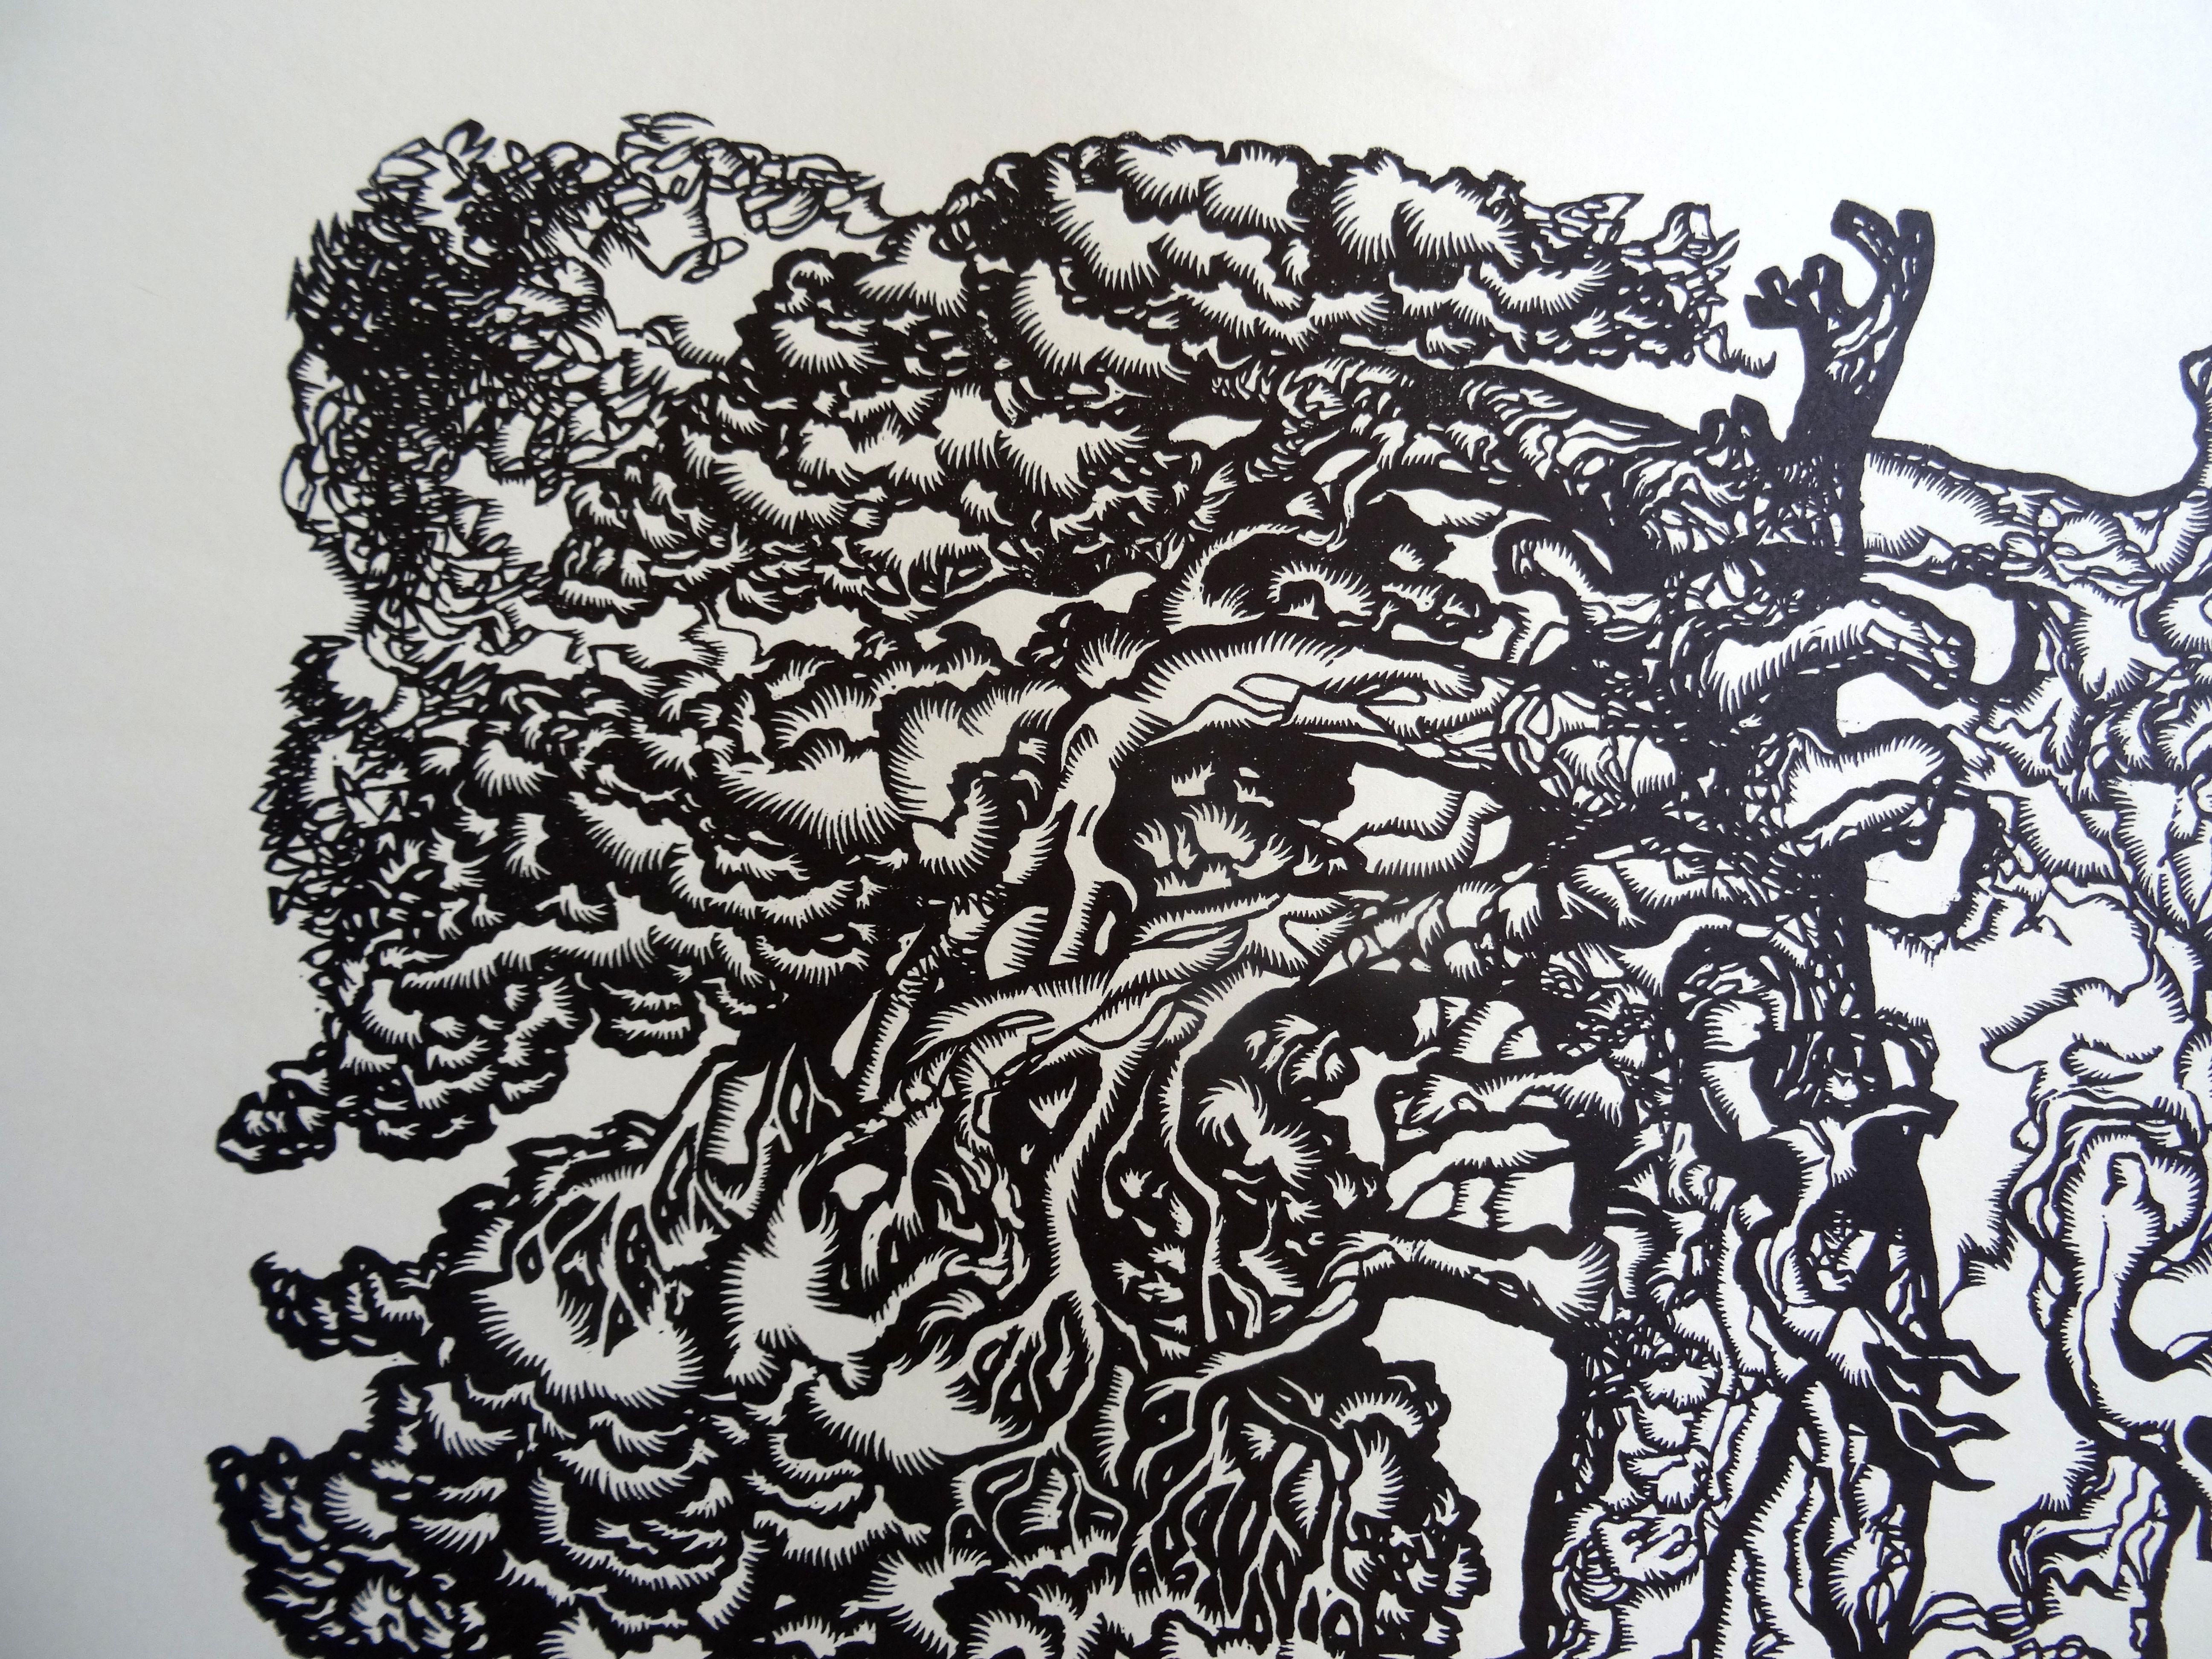 Kiefernholzbaum. 1978, Papier, Linolschnitt, Druckgröße 50x40 cm; Papiergröße 70x55 cm (Geometrische Abstraktion), Print, von Dainis Rozkalns